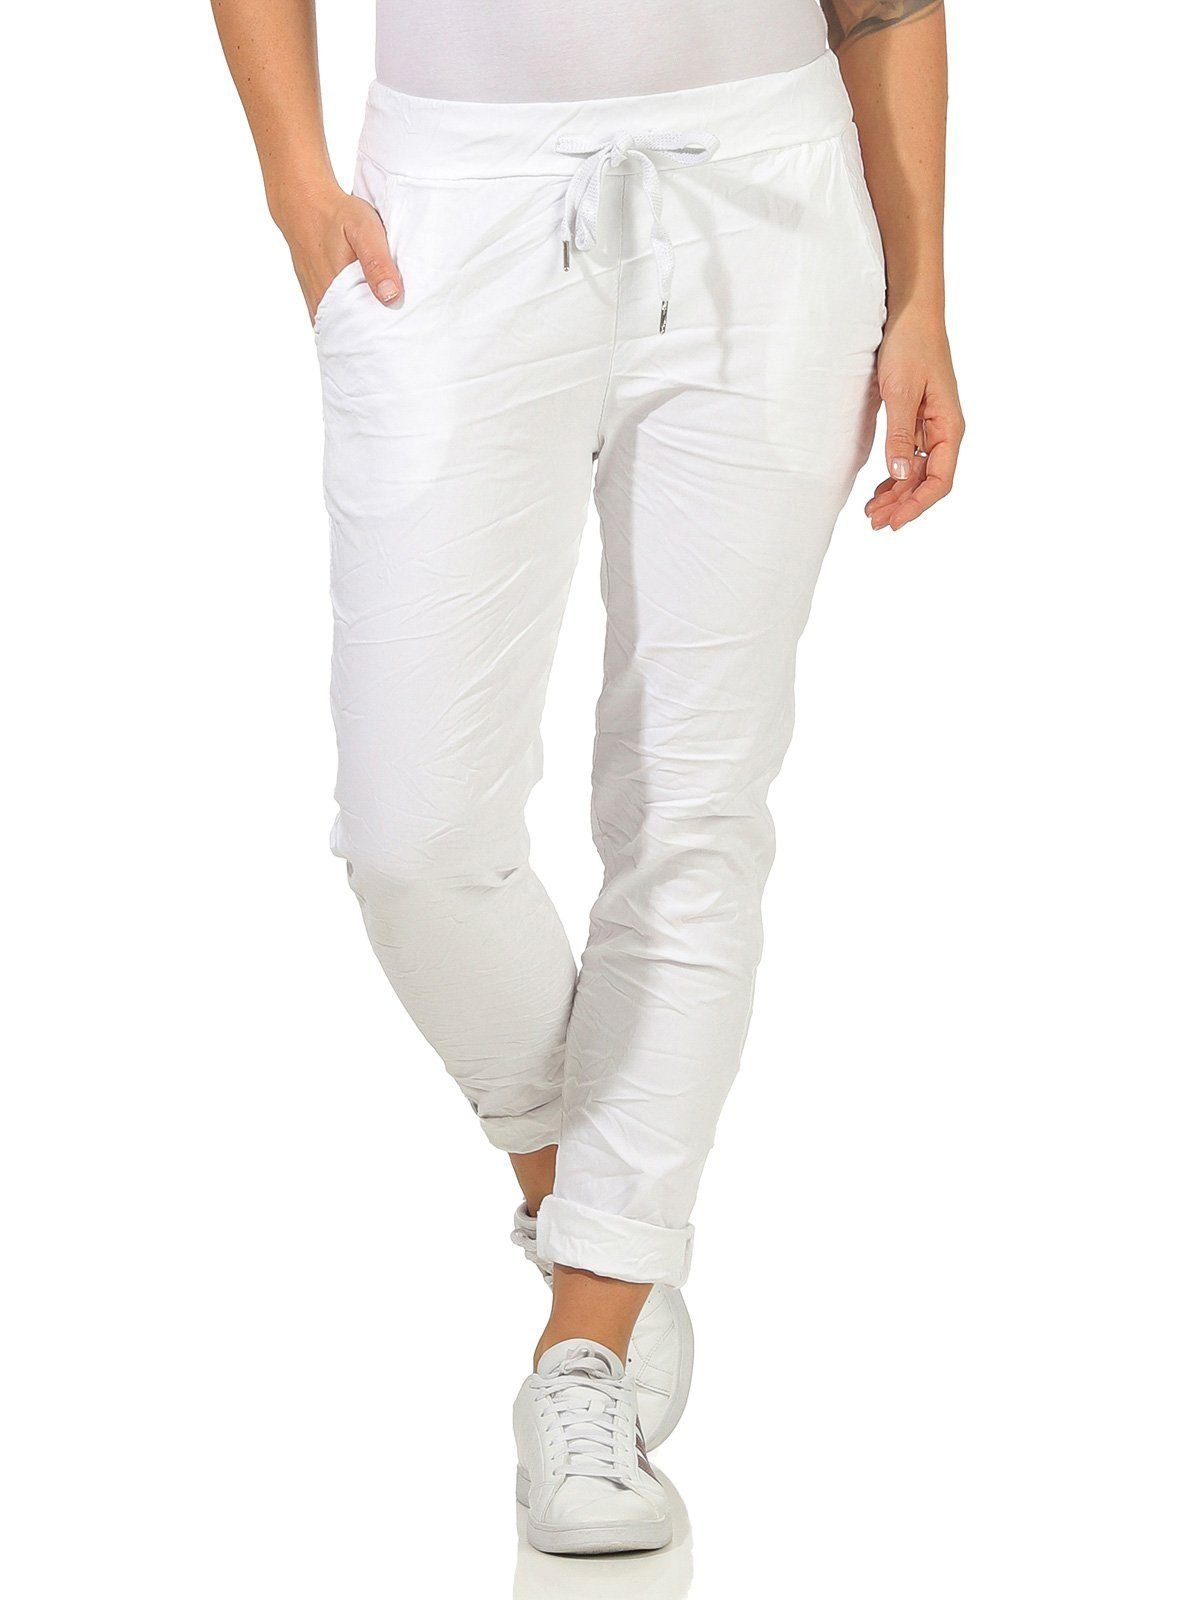 Aurela Damenmode Schlupfhose Sommerhose Damen Chinohose leichte Schlupfhose auch in großen Größen erhältlich, Stretch-Jeans in modischen Sommerfarben, max. Körpergröße 1,69m Weiß